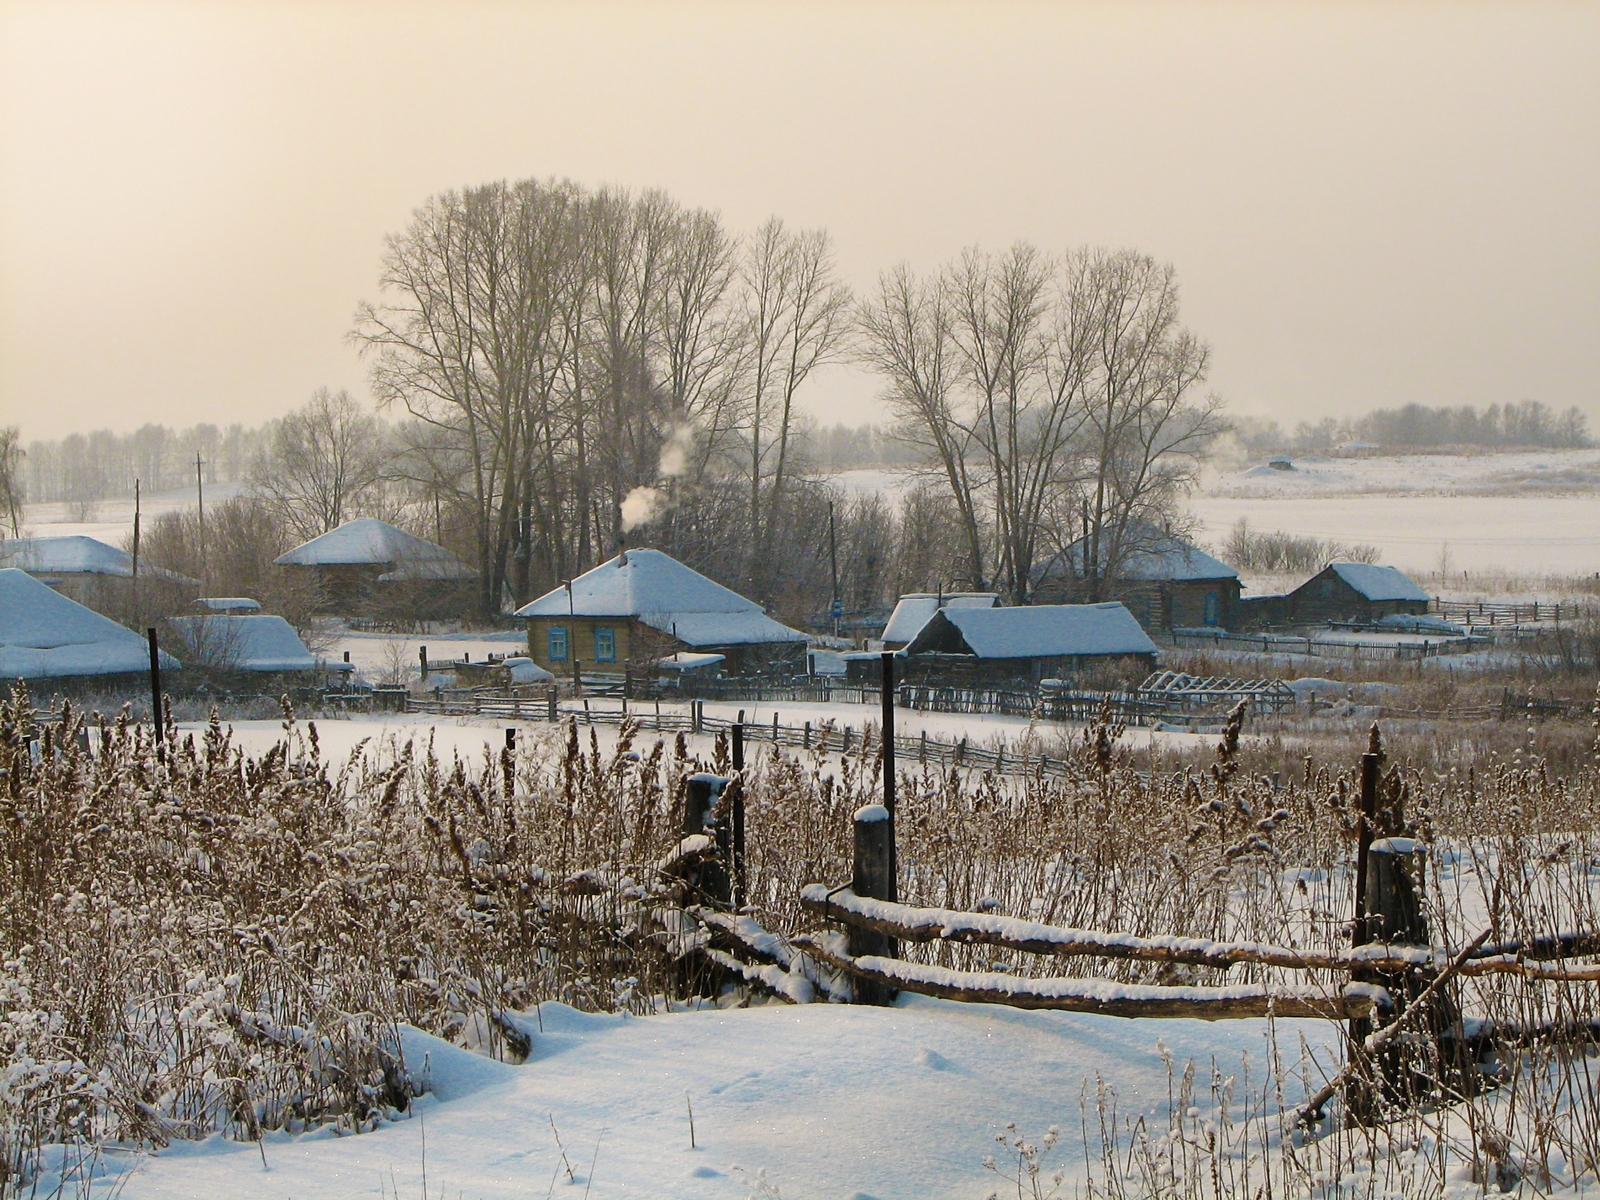 У околицы грязи. Зимняя Околица деревни. Зимний вечер в деревне. Заснеженная деревня у реки. Морозный день в деревне.